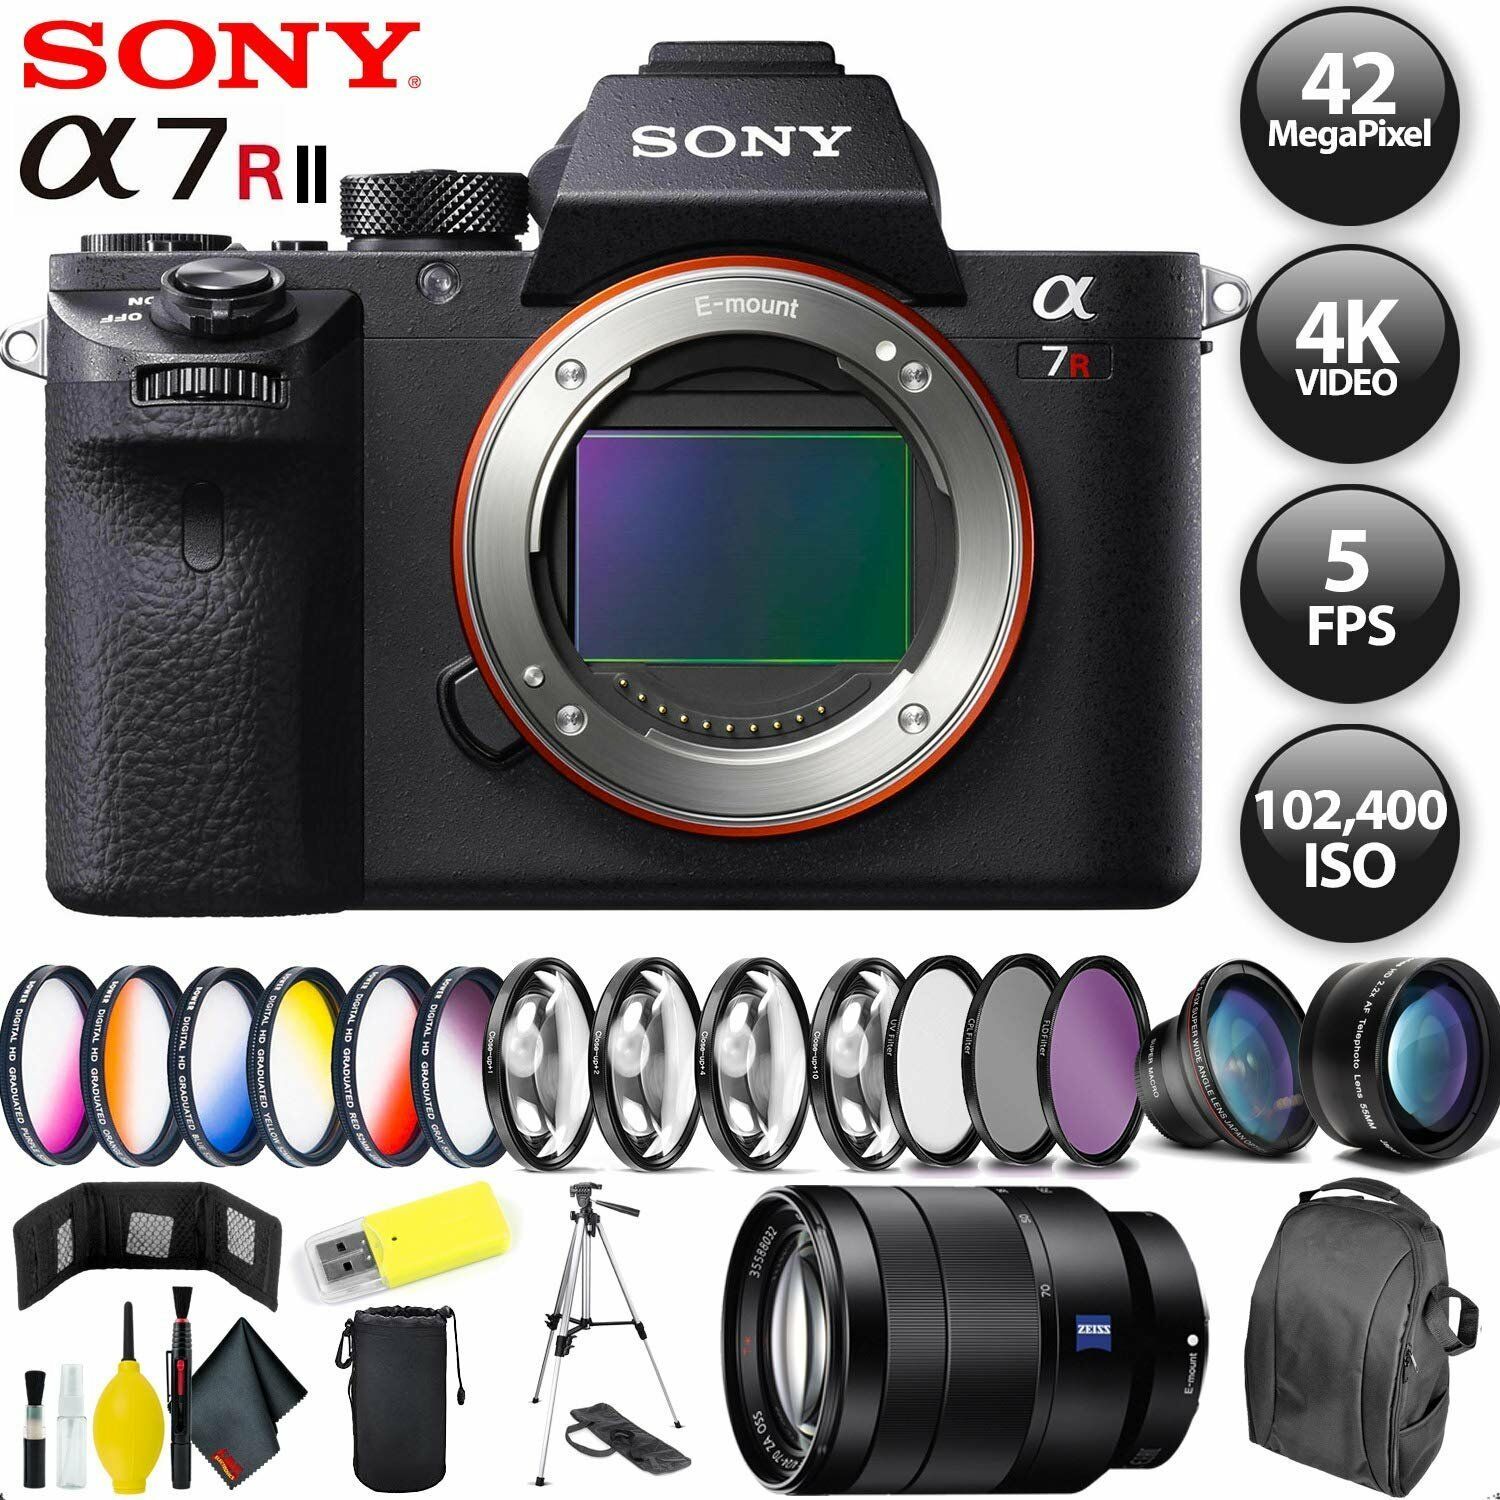 Sony Alpha a7R II Mirrorless Digital Camera + 128GB Memory Card + Sony FE 70-200mm Lens